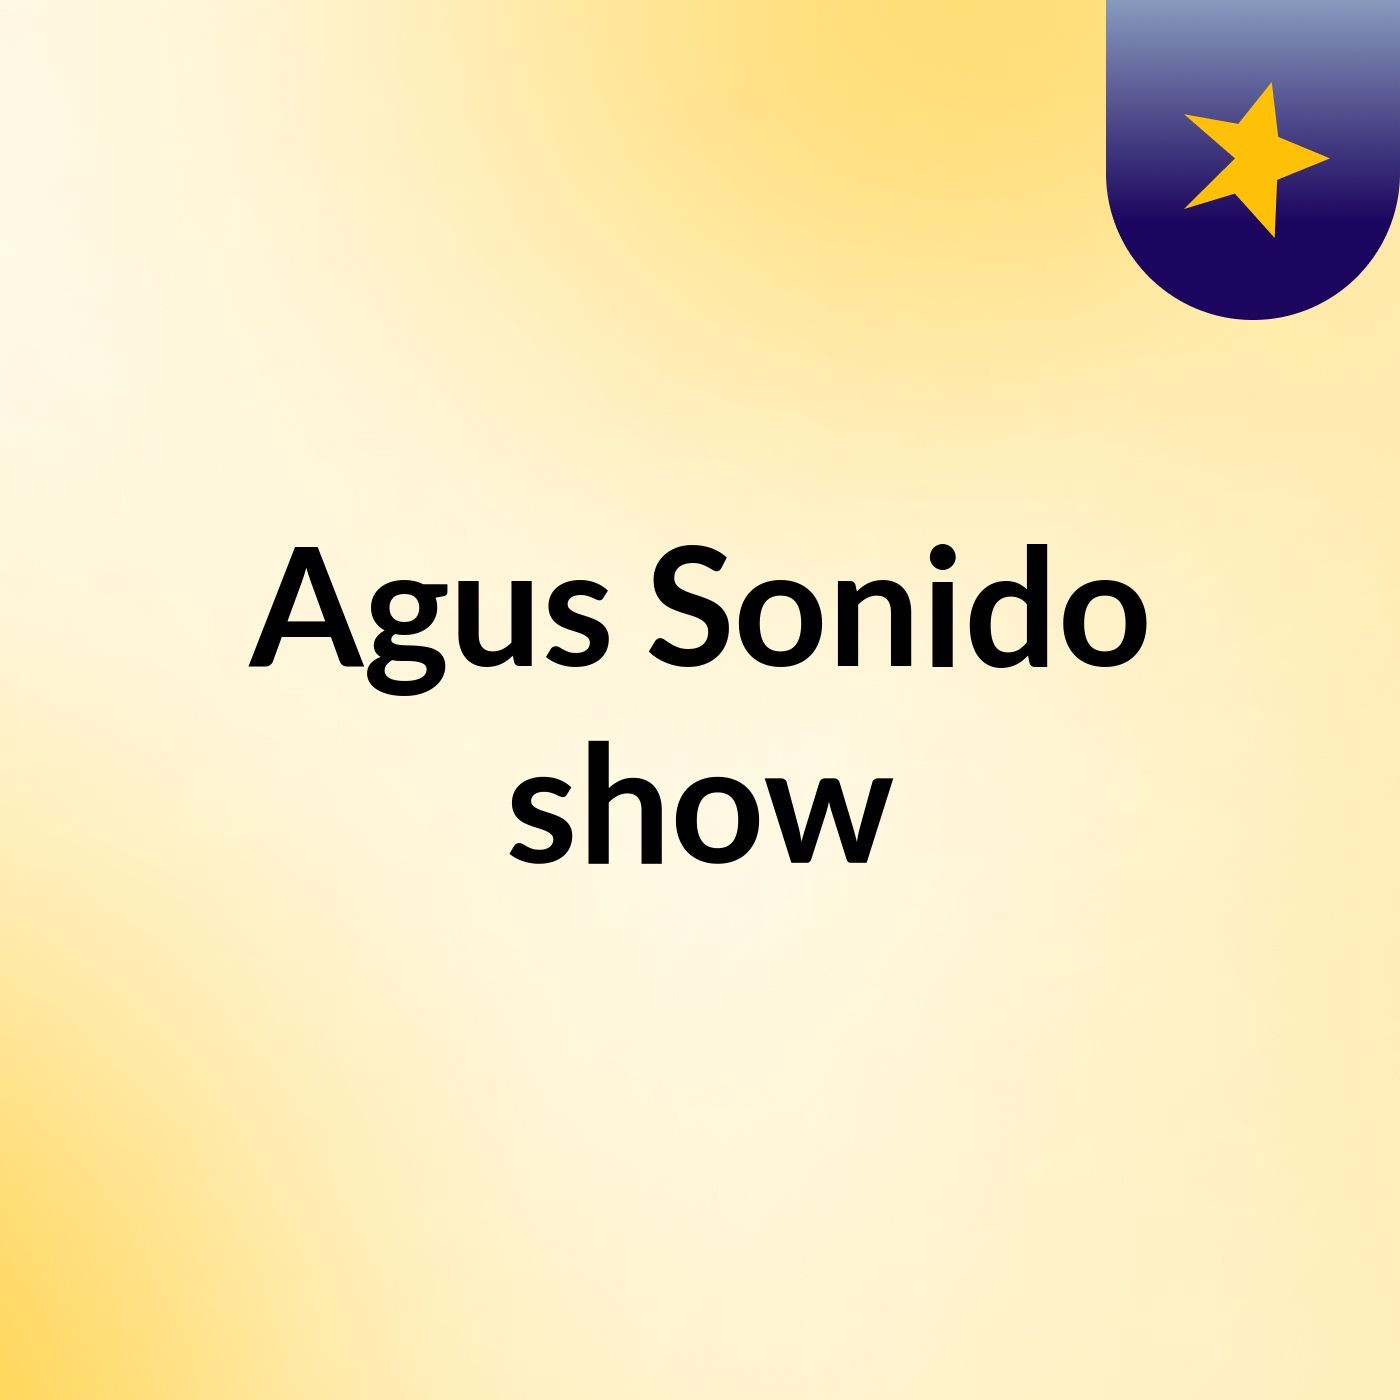 Agus Sonido show